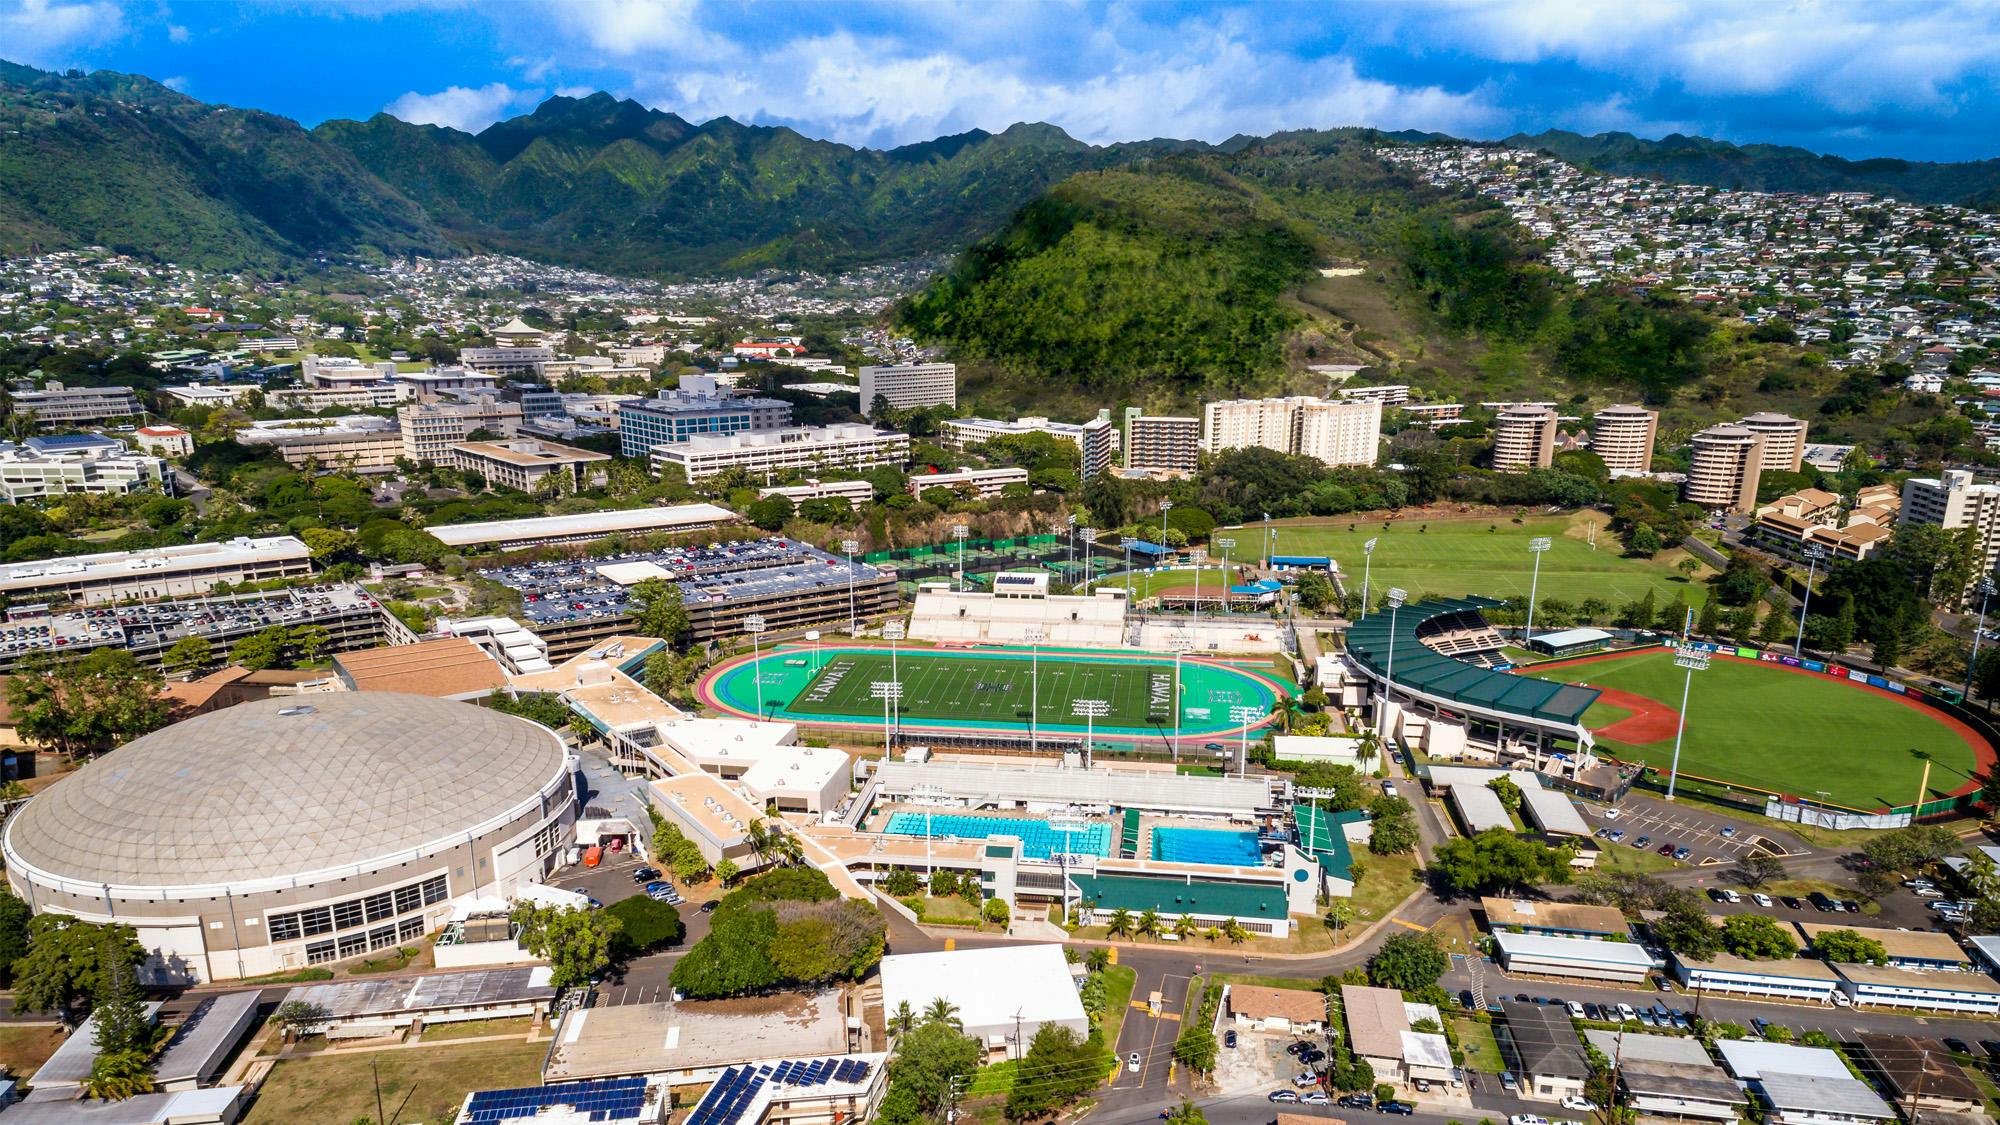 University of Hawai’i at Mānoa